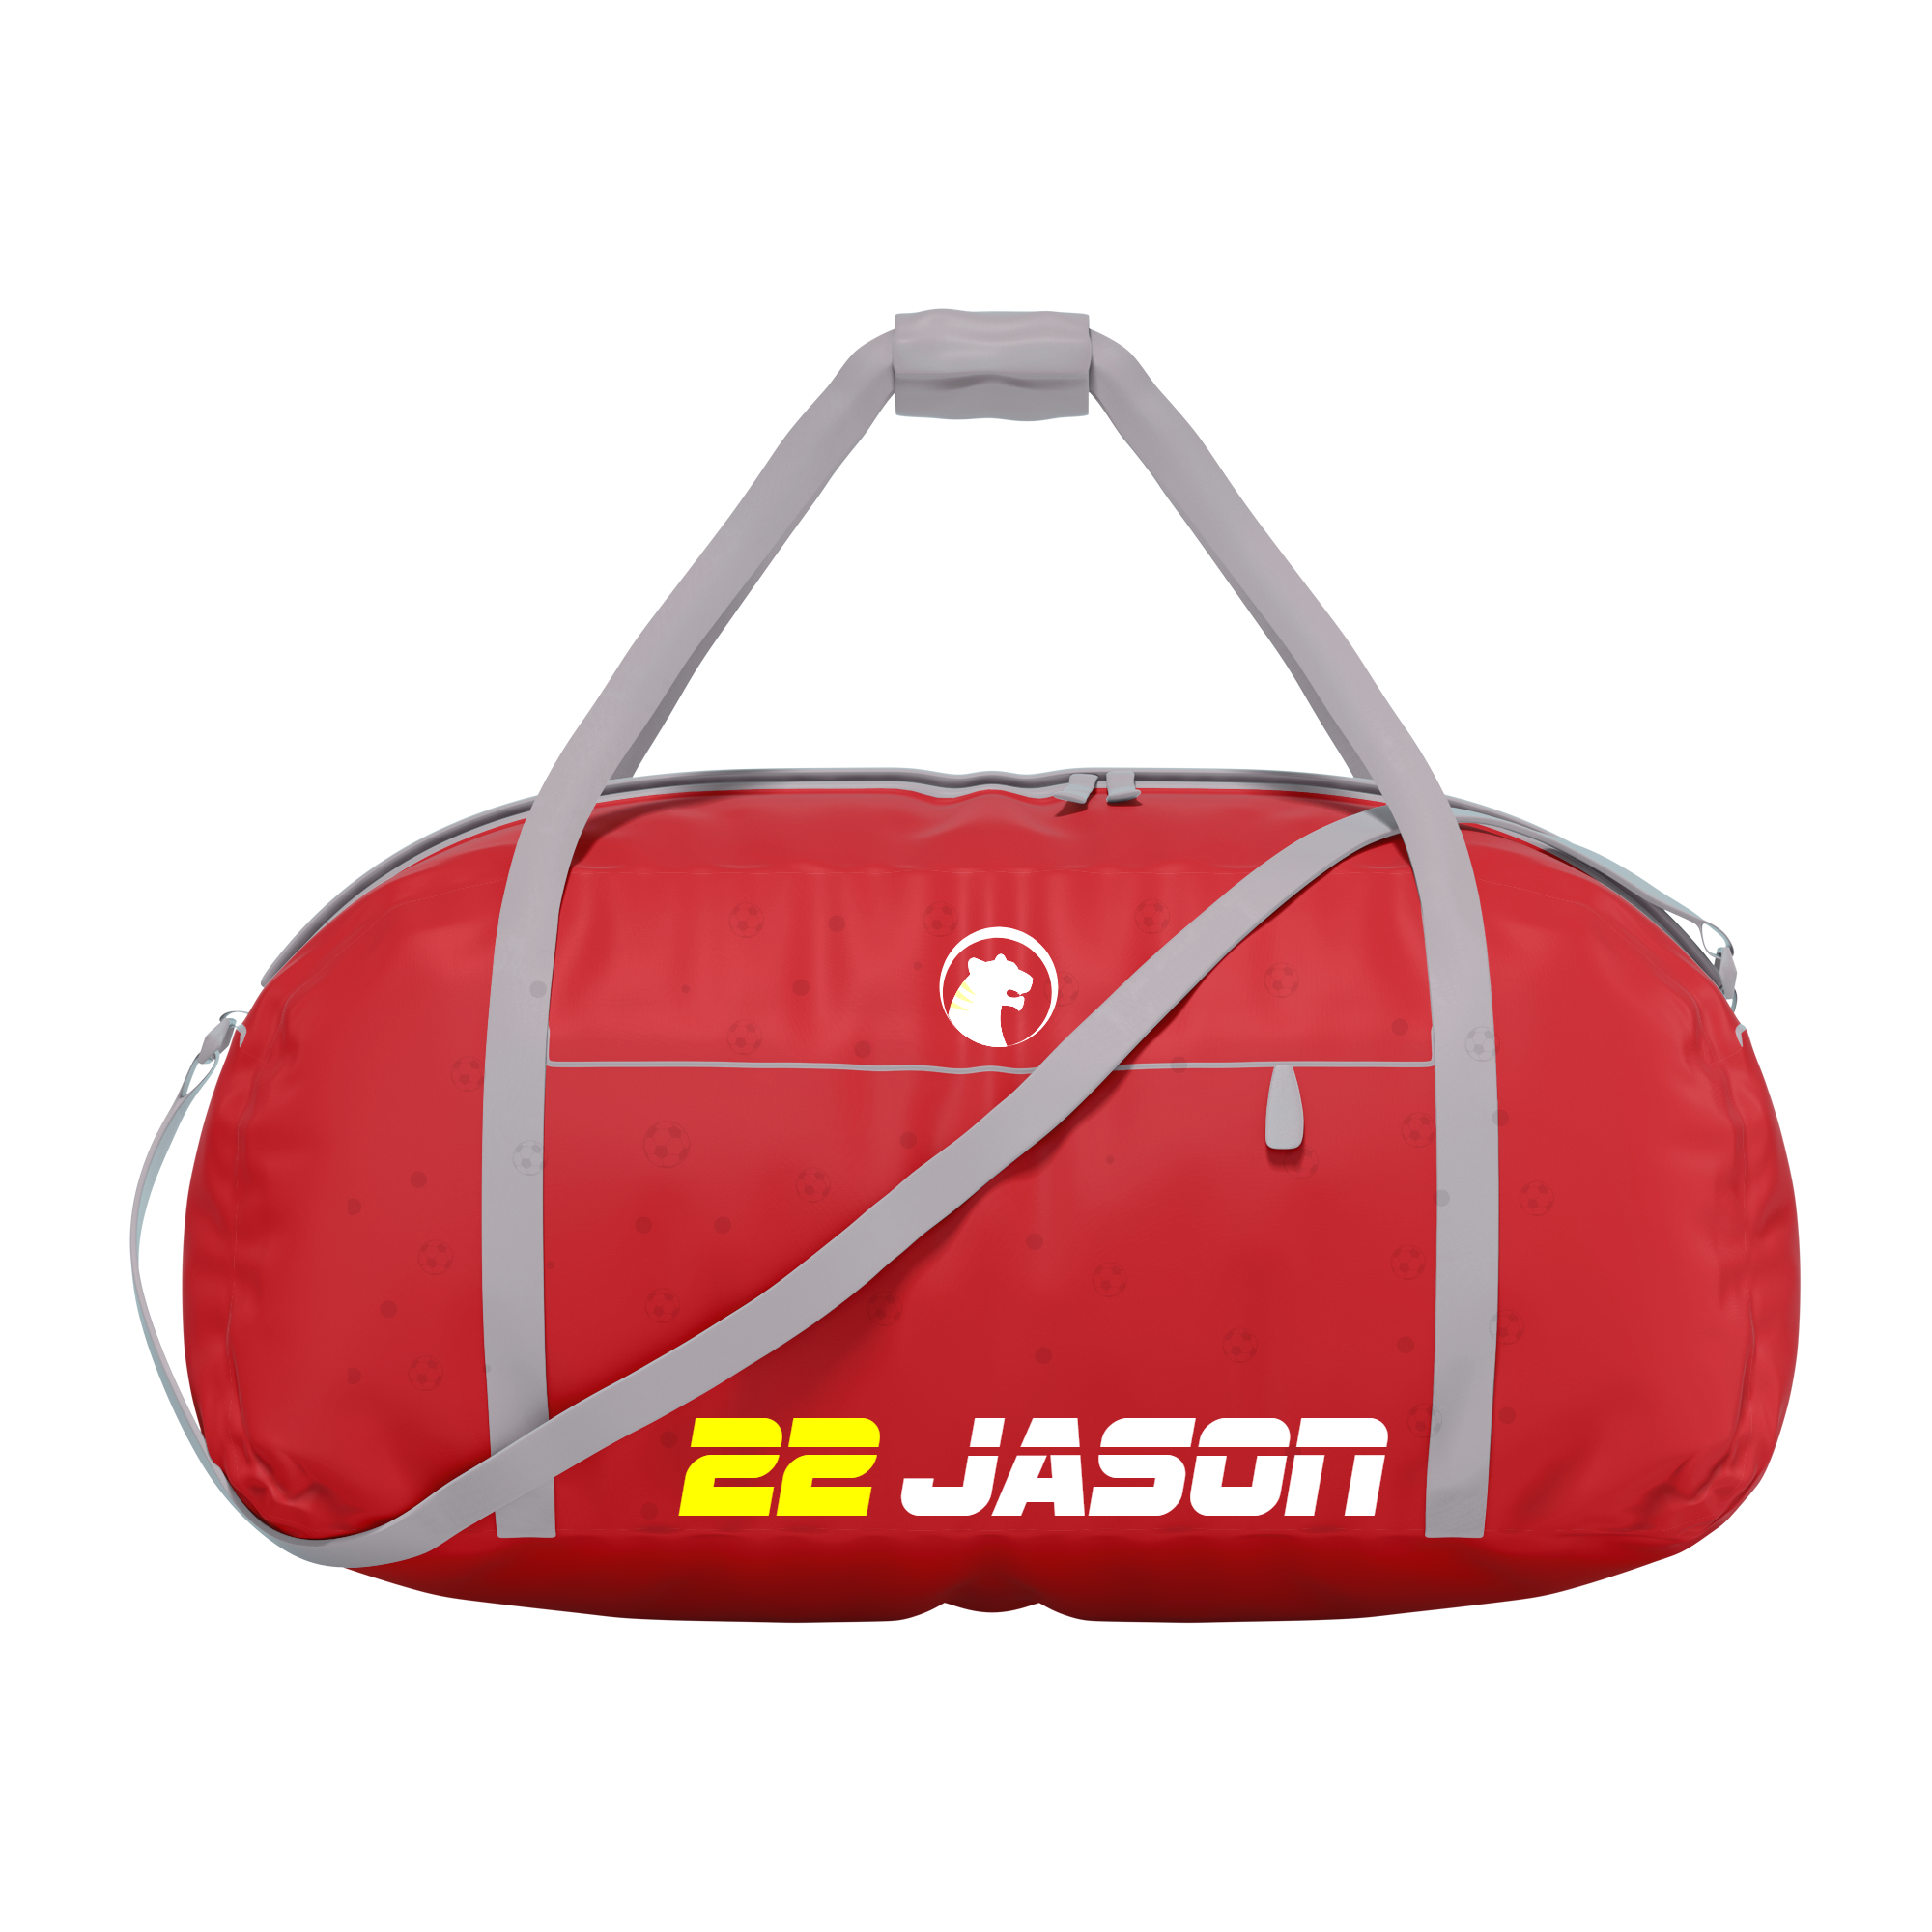 22 Jason Sports Bag